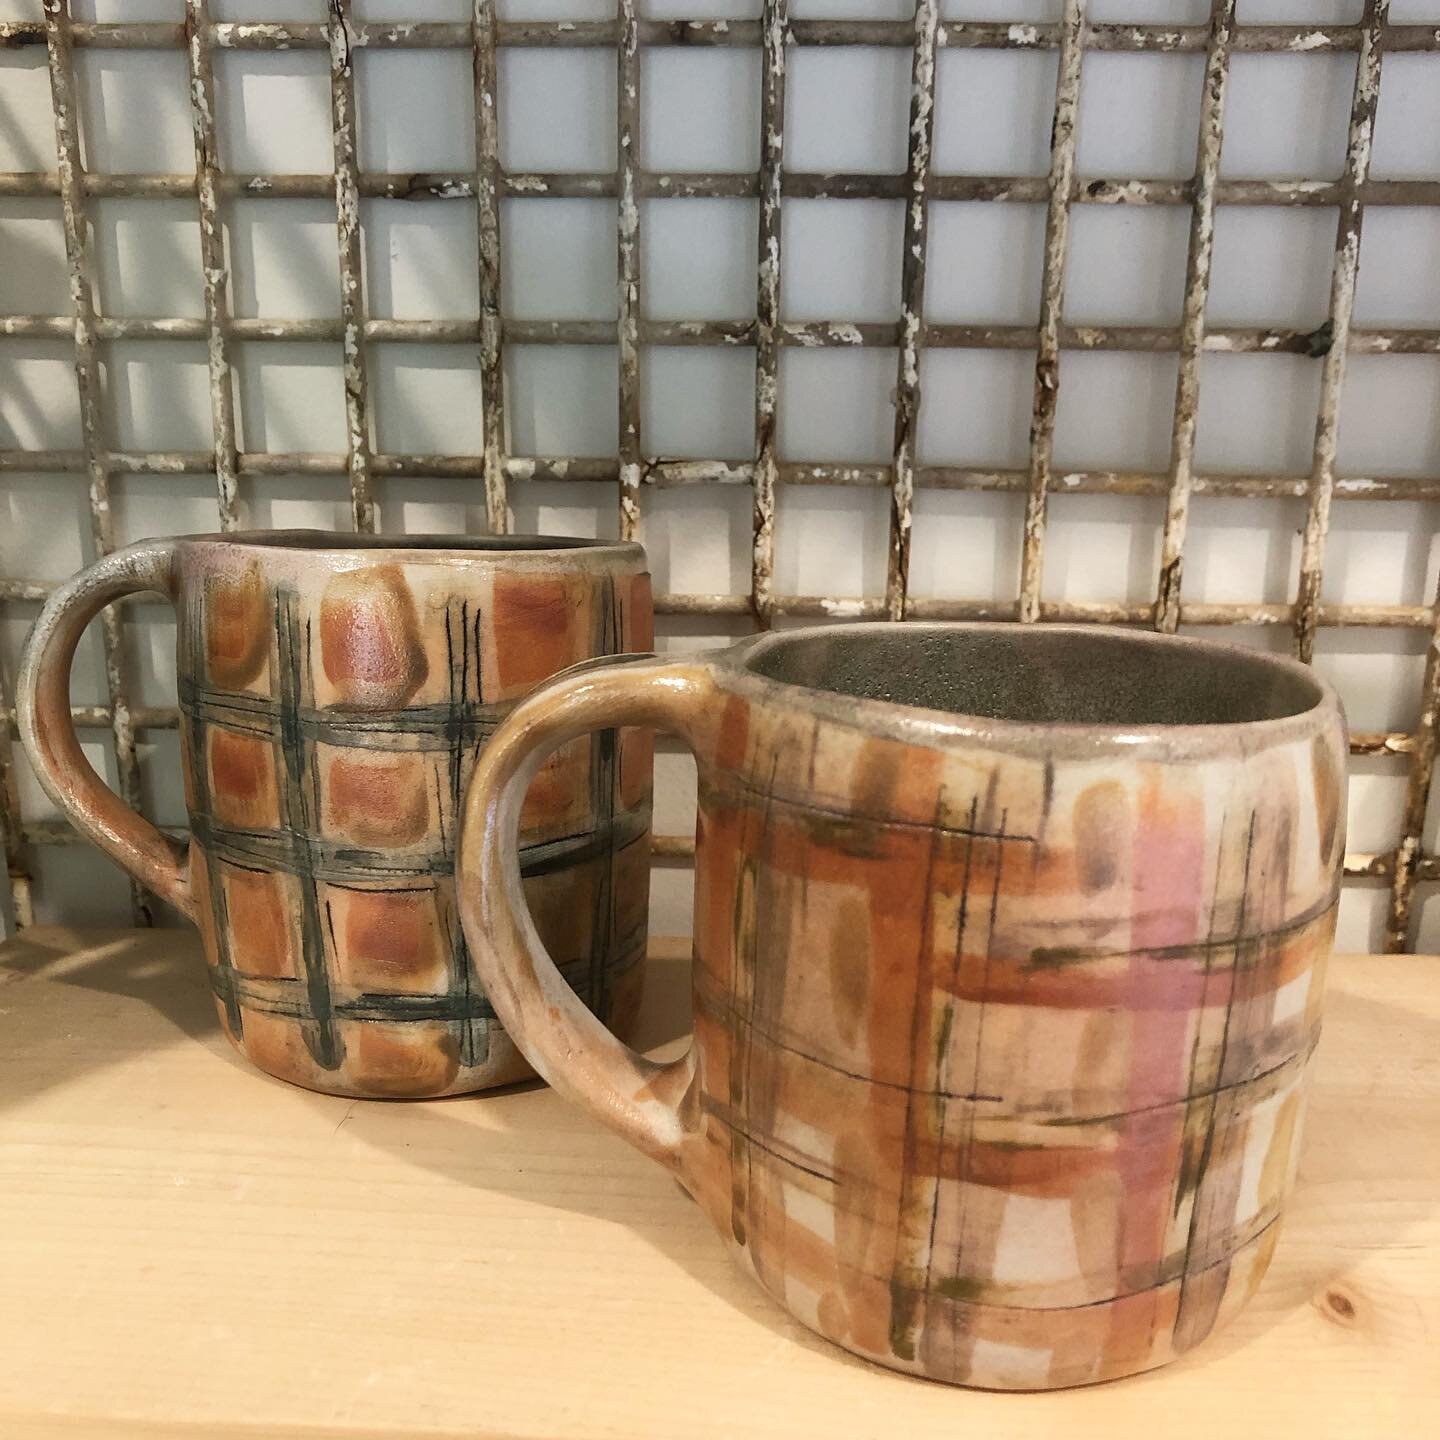 Couple mugs from the last soda kiln